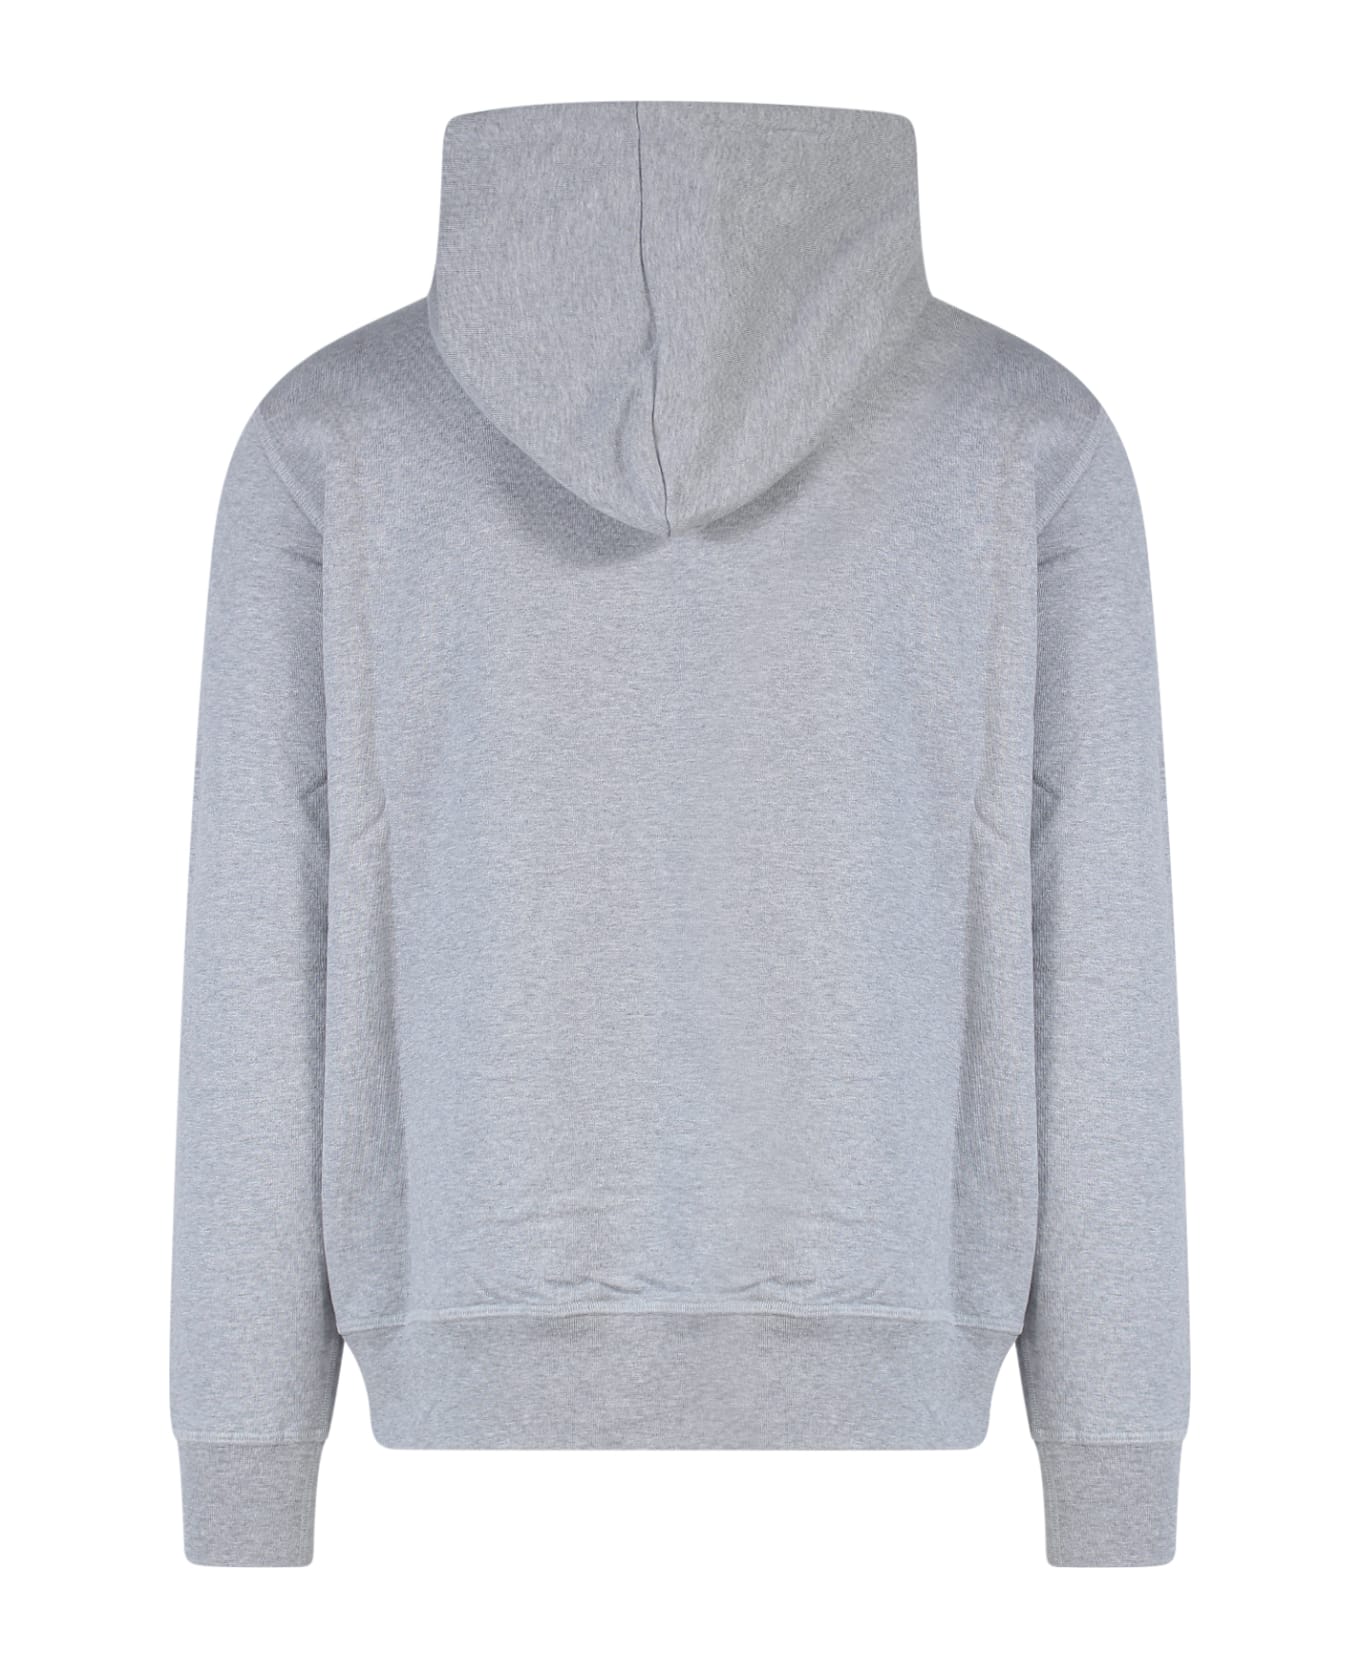 Alexander McQueen Sweatshirt - Grey